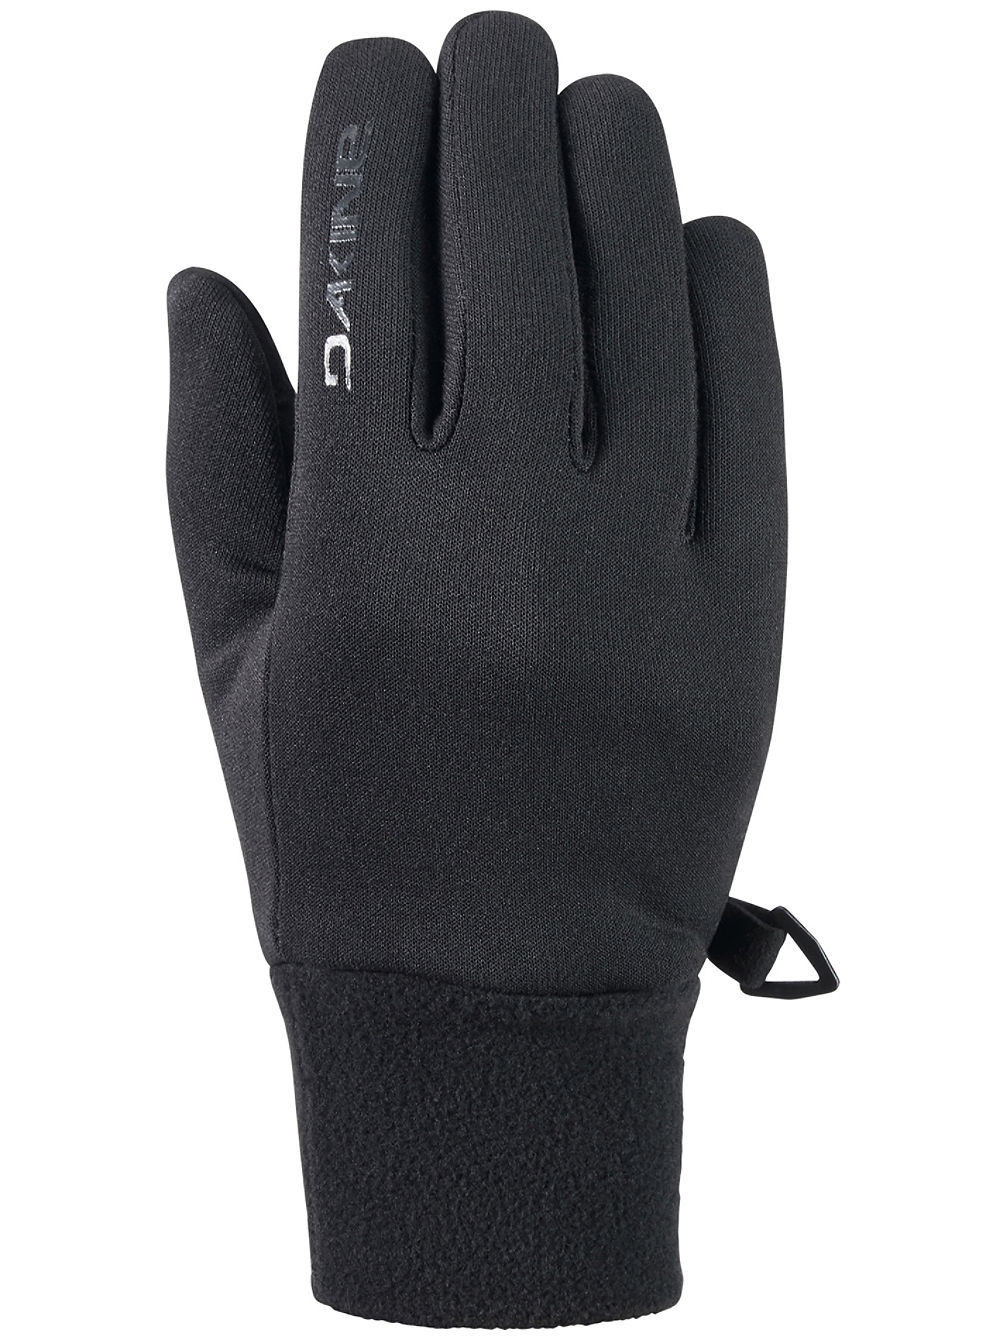 Storm Liner Gloves